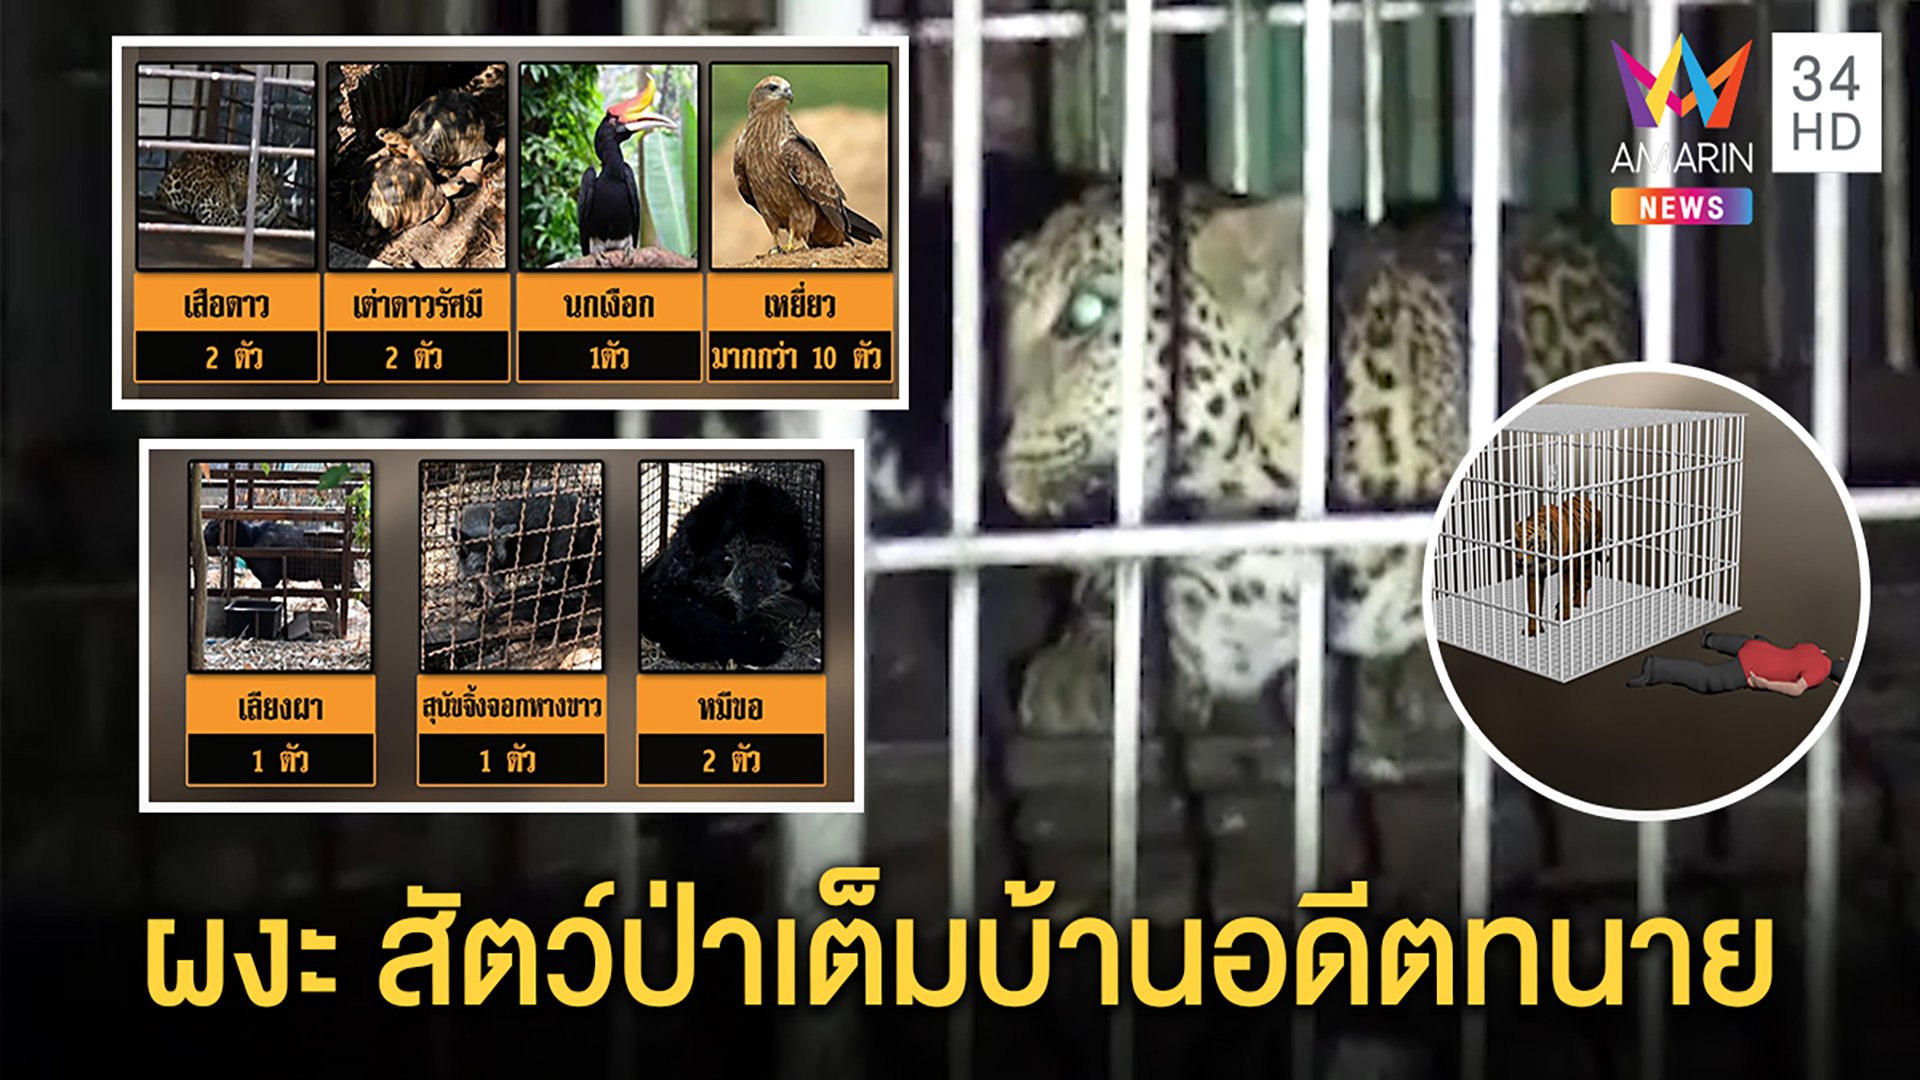 ทนายดับข้างกรงเสือ ผงะสัตว์ป่าคุ้มครองเต็มบ้าน สภาพอดอยาก พบไม่มีใบอนุญาต | ทุบโต๊ะข่าว | 24 มี.ค. 63 | AMARIN TVHD34